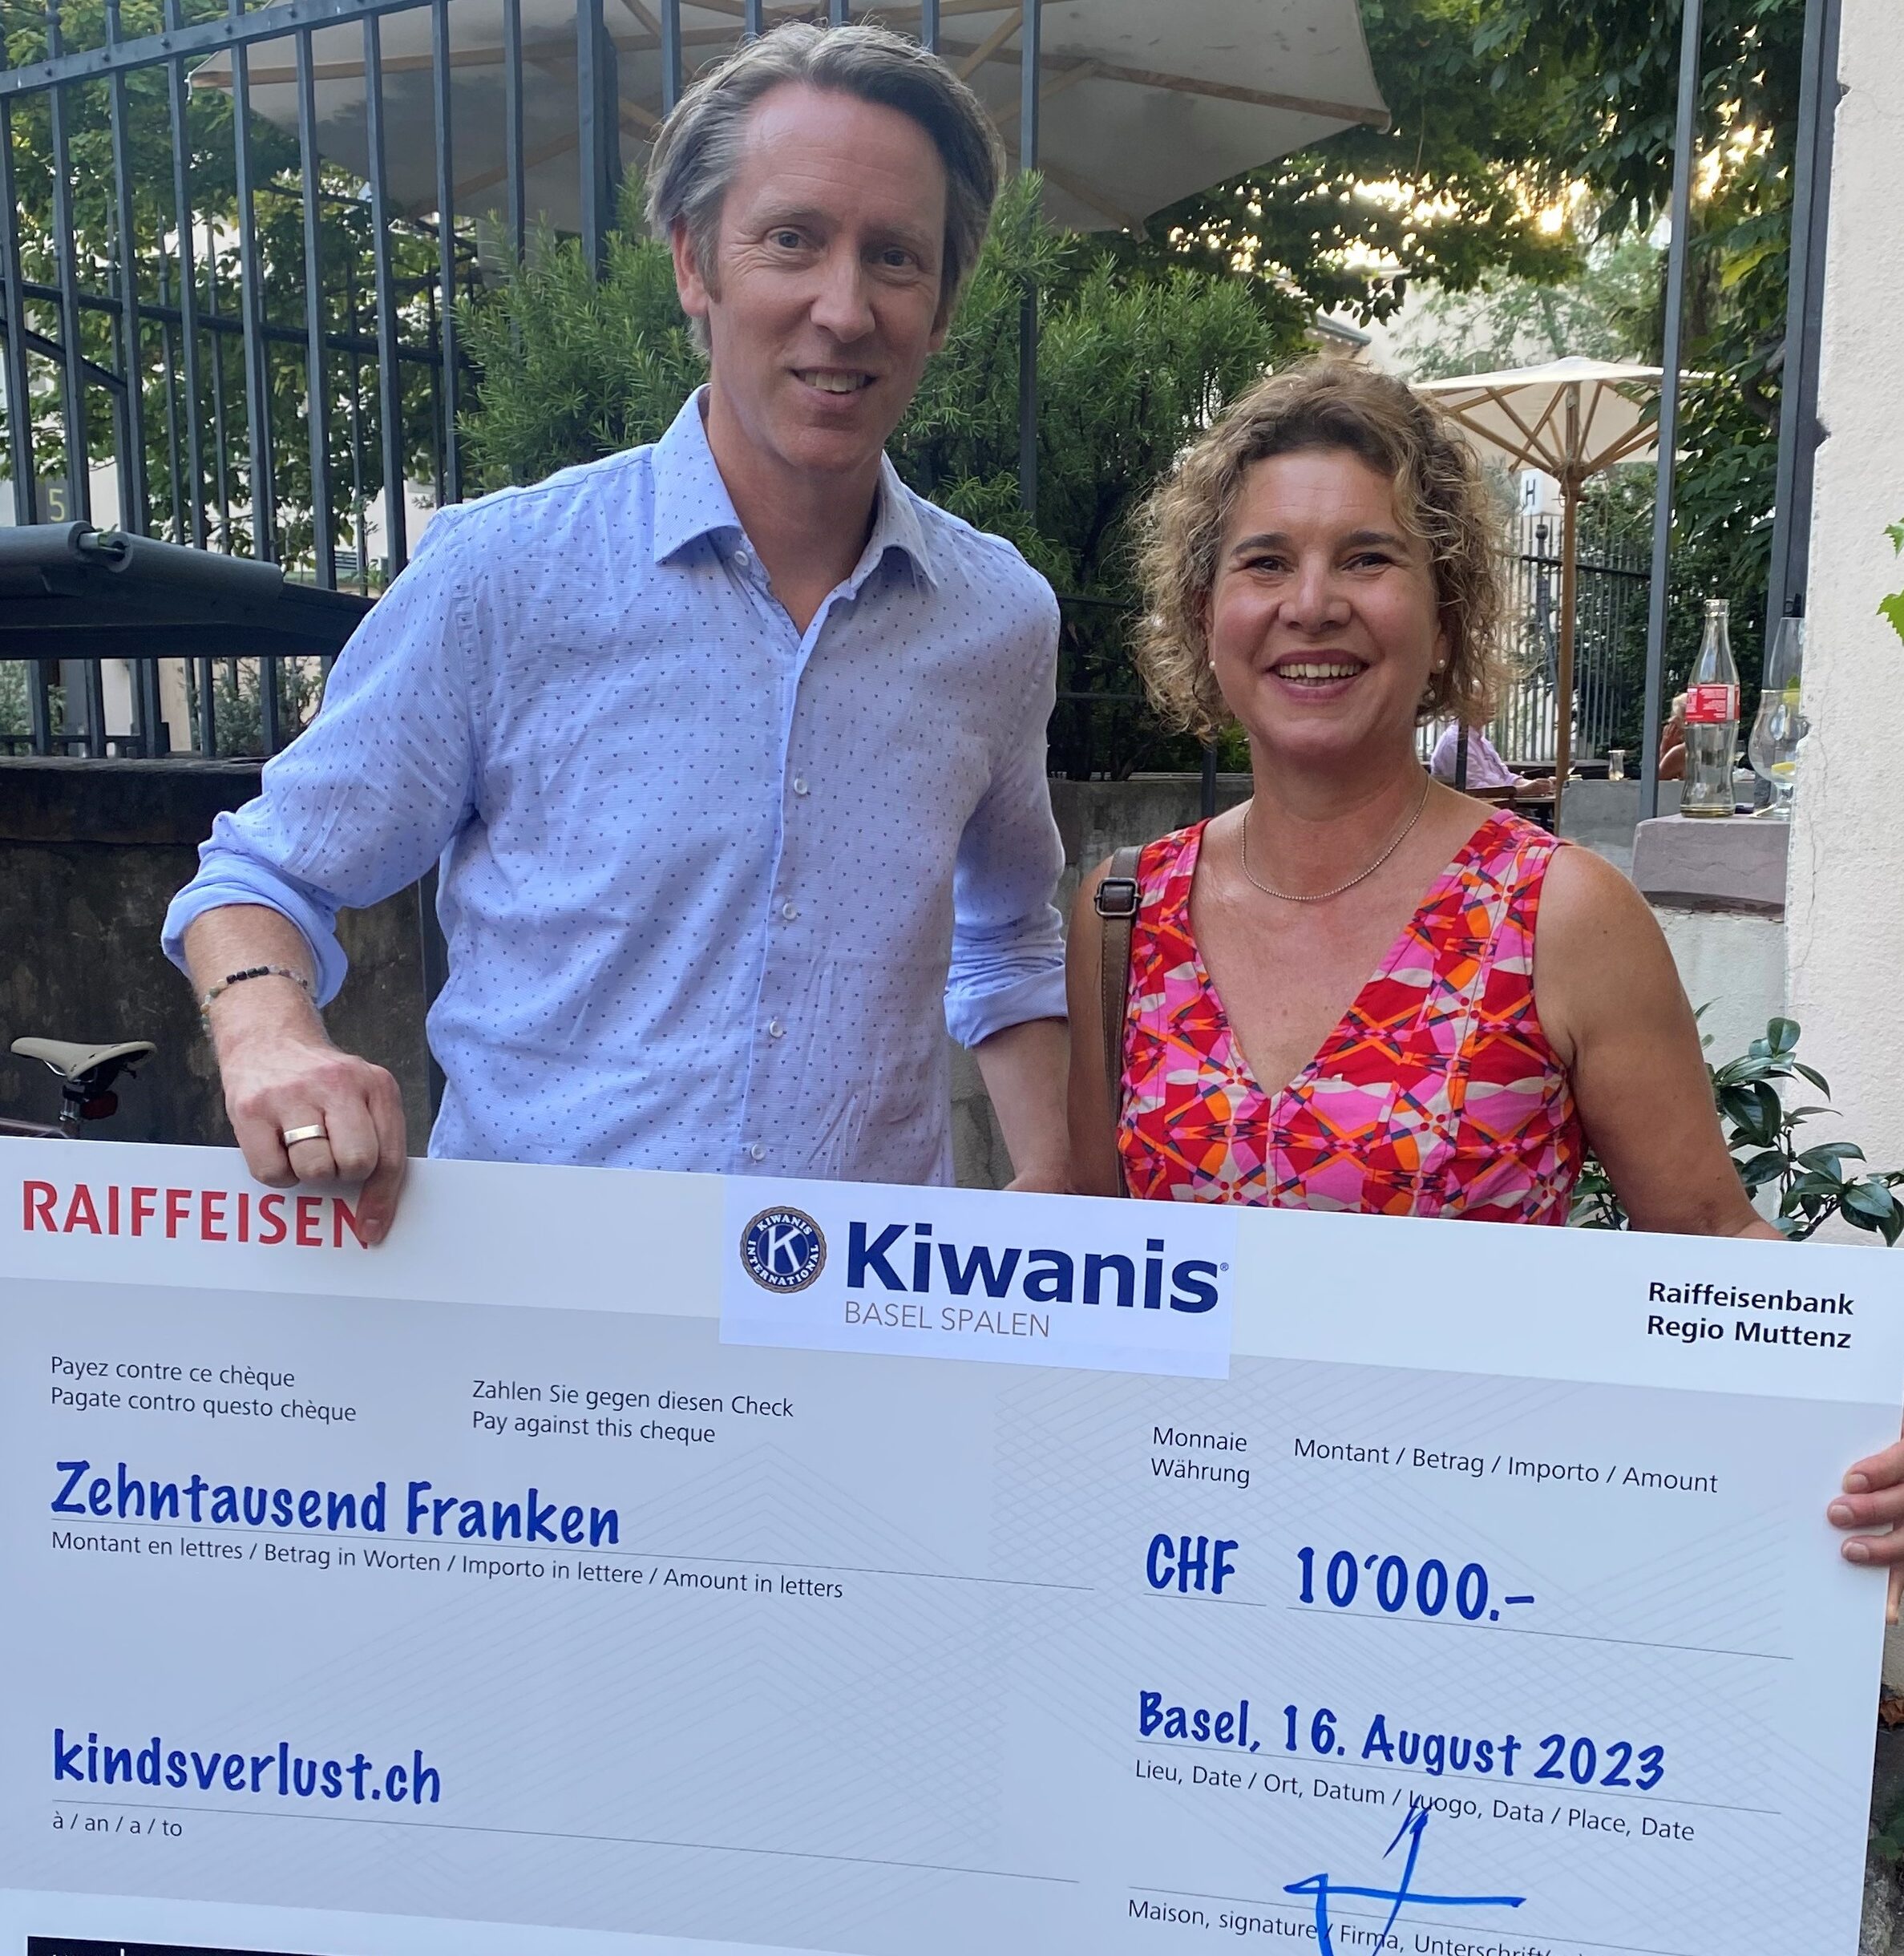 Herzlichen Dank An Kiwanis Basel Spalen – Unterstützungsbeitrag An Die Fachstelle Kindsverlust.ch